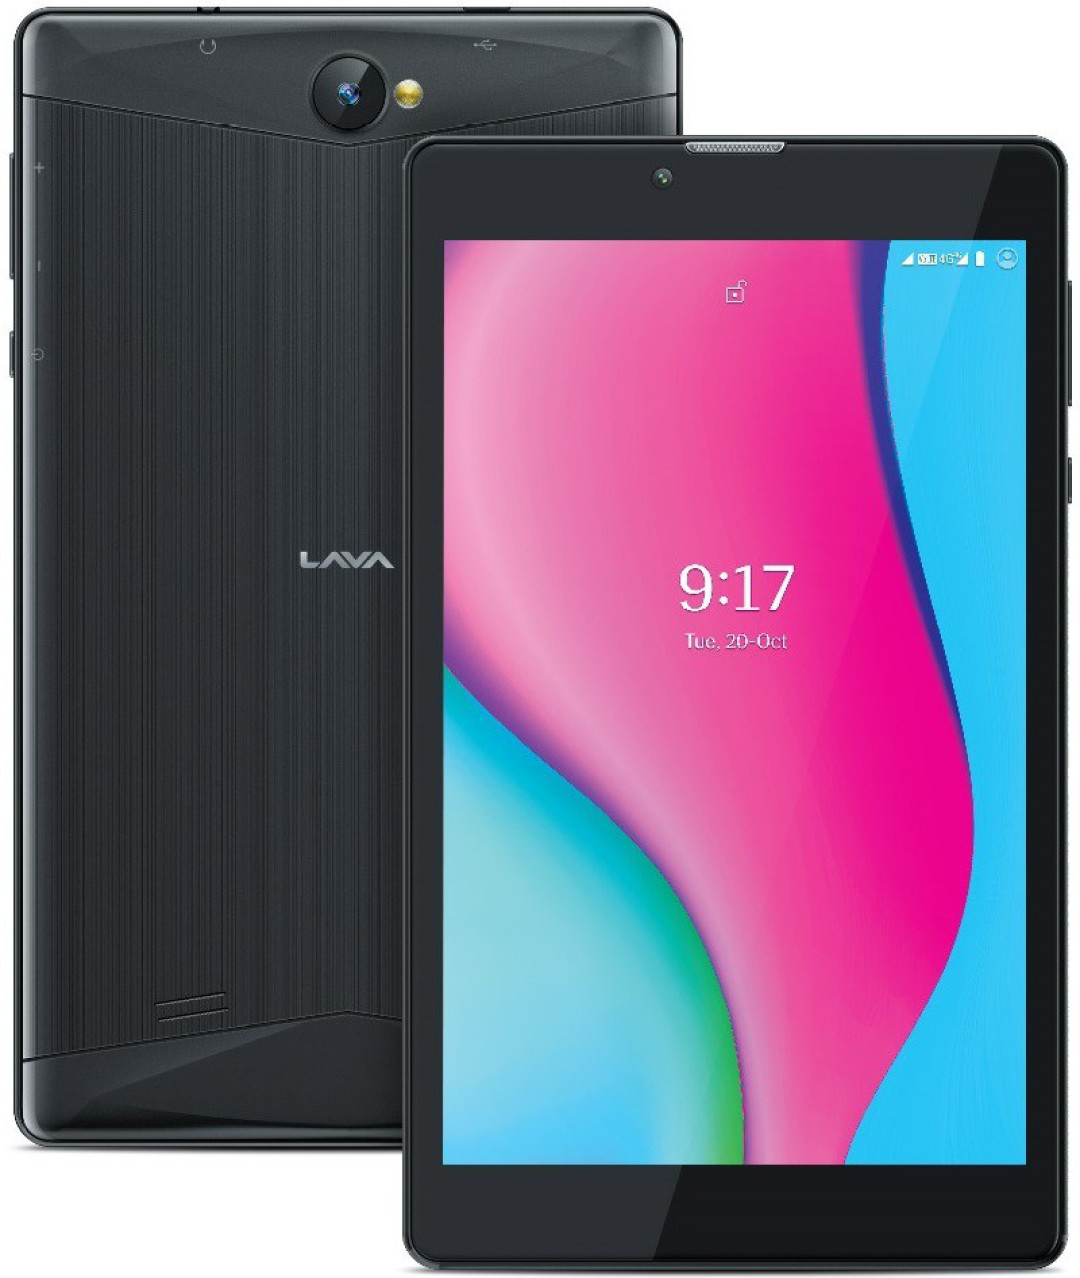 LAVA Ivory 2 GB RAM 16 GB ROM 7 inch with Wi-Fi+4G Tablet (Black) 1yr Warranty  - Black